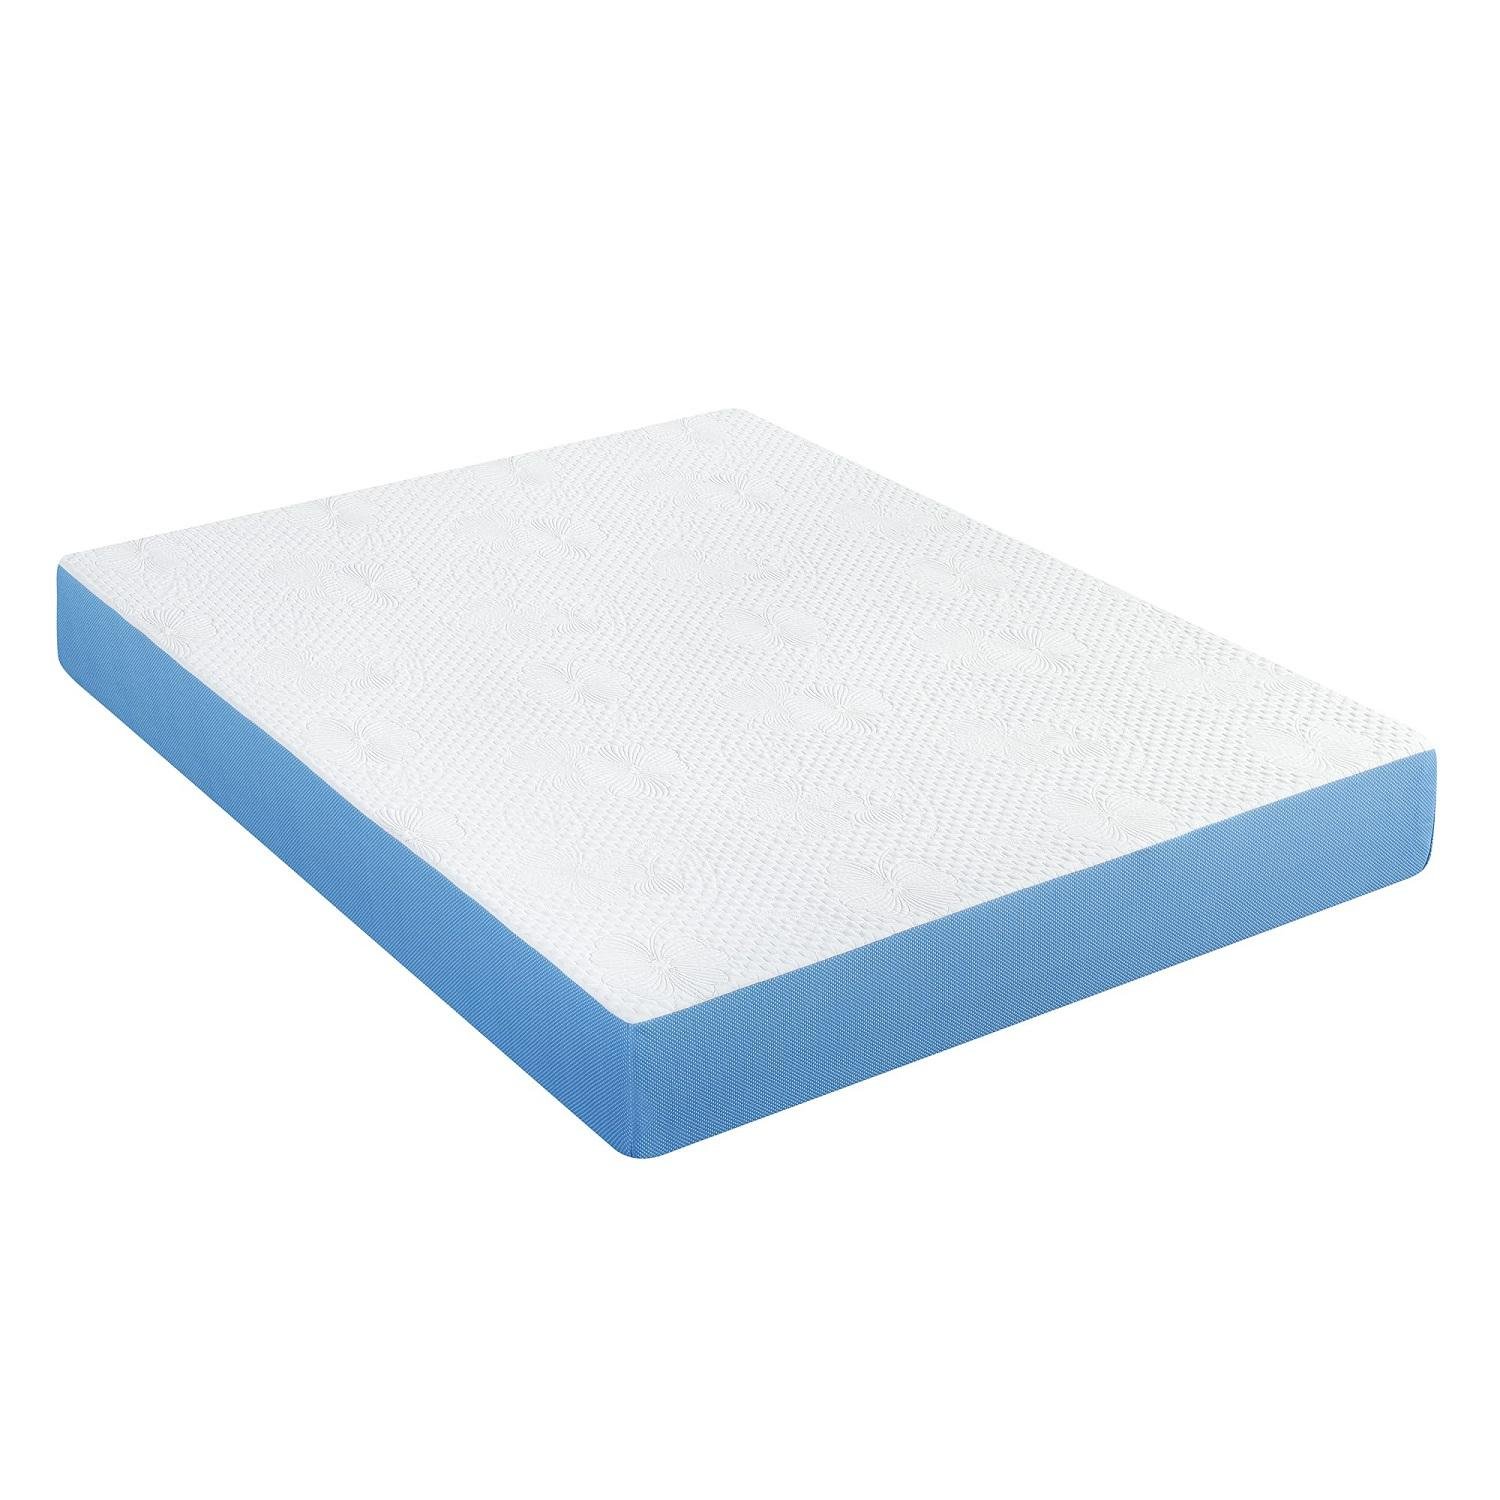 Soft Foam Sleep Rest Mattress Pocket Innerspring Natural Latex Sponge Mattress 5